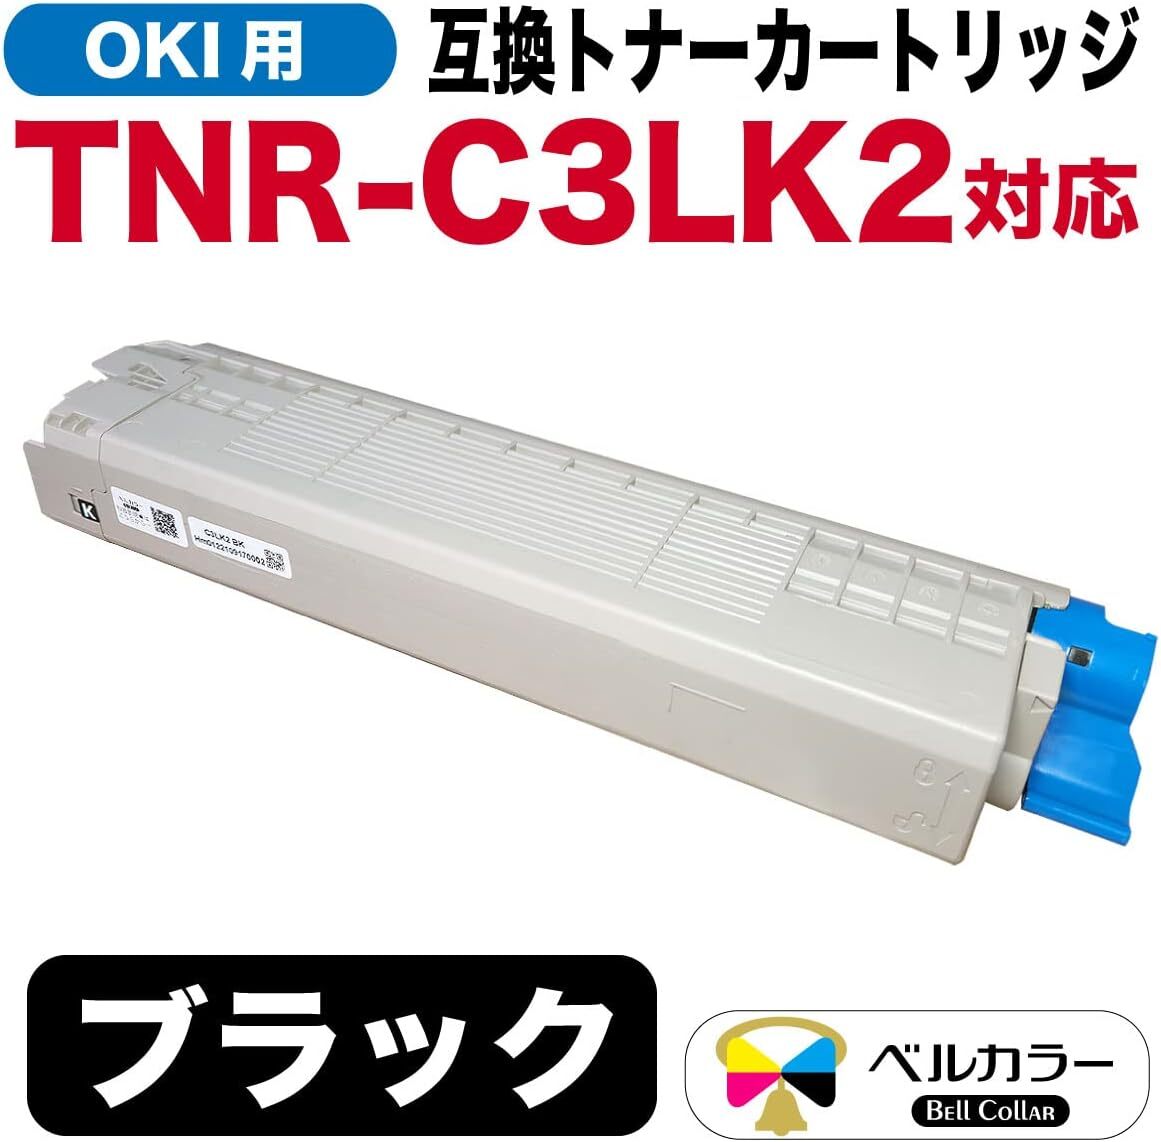 ベルカラー OKI 互換トナーカートリッジ TNR-C3LK2 C811dn MC843dnwv MC843dnw ブラック 大容量